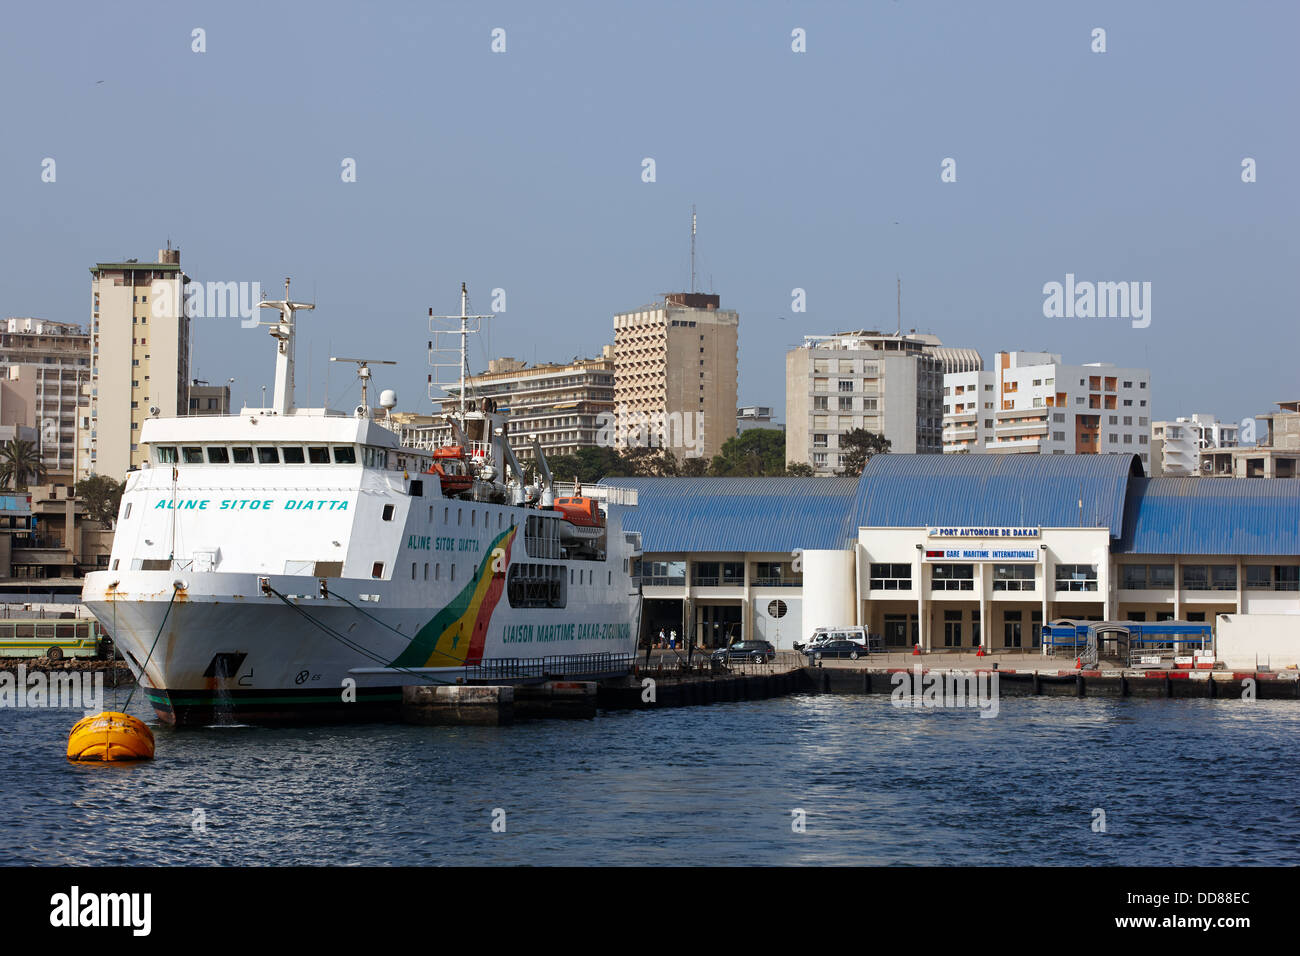 Dakar-Ziguinchor Ferry, Ferry Port, Dakar, Senegal, Africa Stock Photo